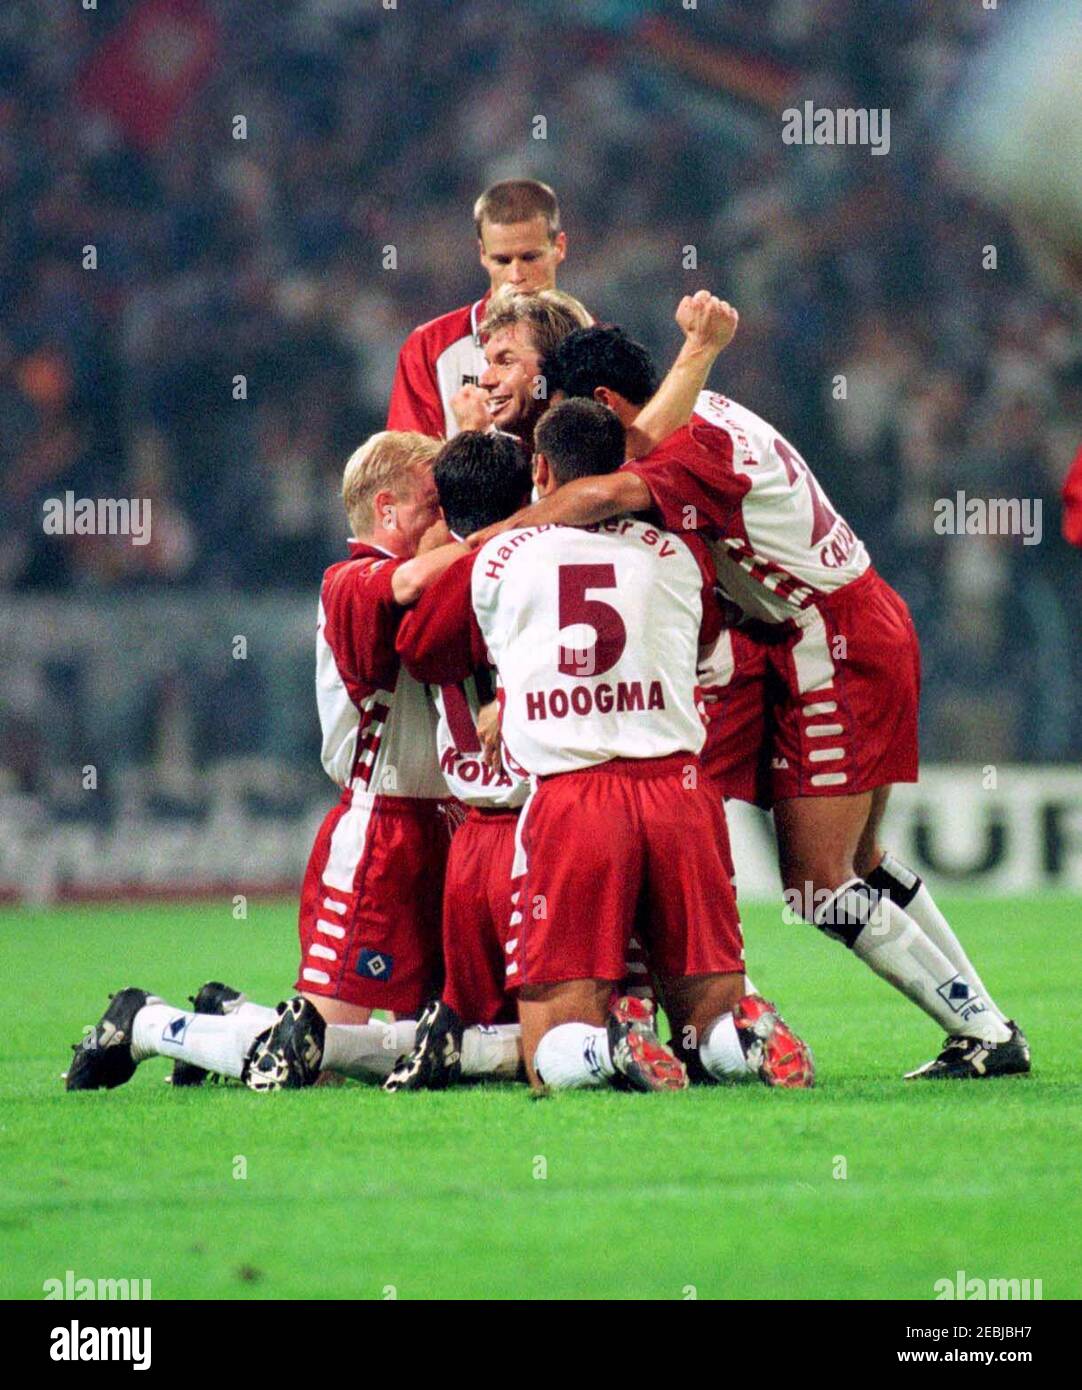 Gelsenkirchen Deutschland 27,8.1999, Fußball: Bundesliga-Saison 1999/2000  Schalke 04 gegen Hamburger SV (HSV, rot) - Hamburger Mannschaft feiert  Stockfotografie - Alamy